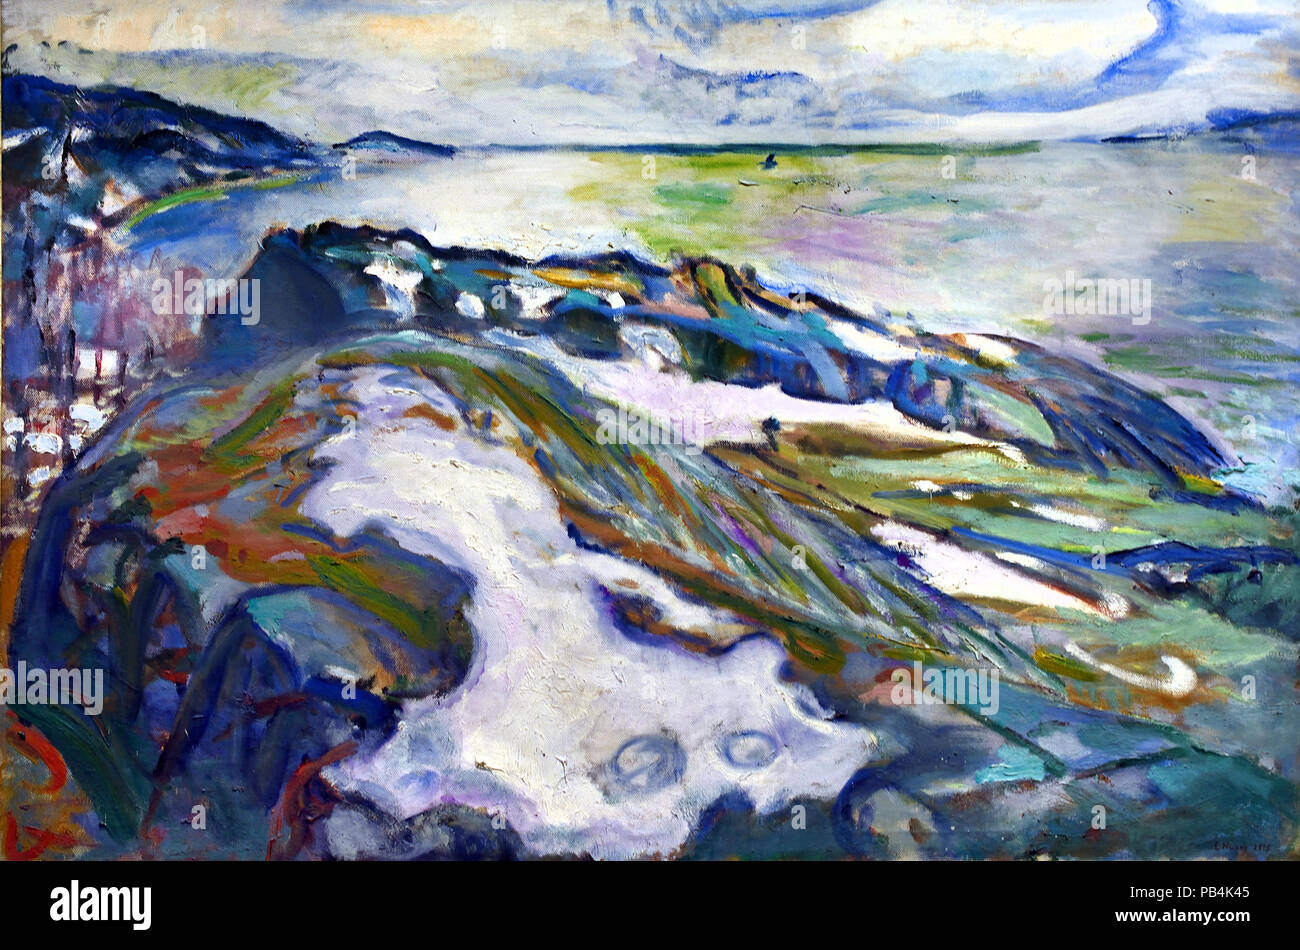 Noruega - 🇳🇴 Pintor norueguês Edvard Munch 